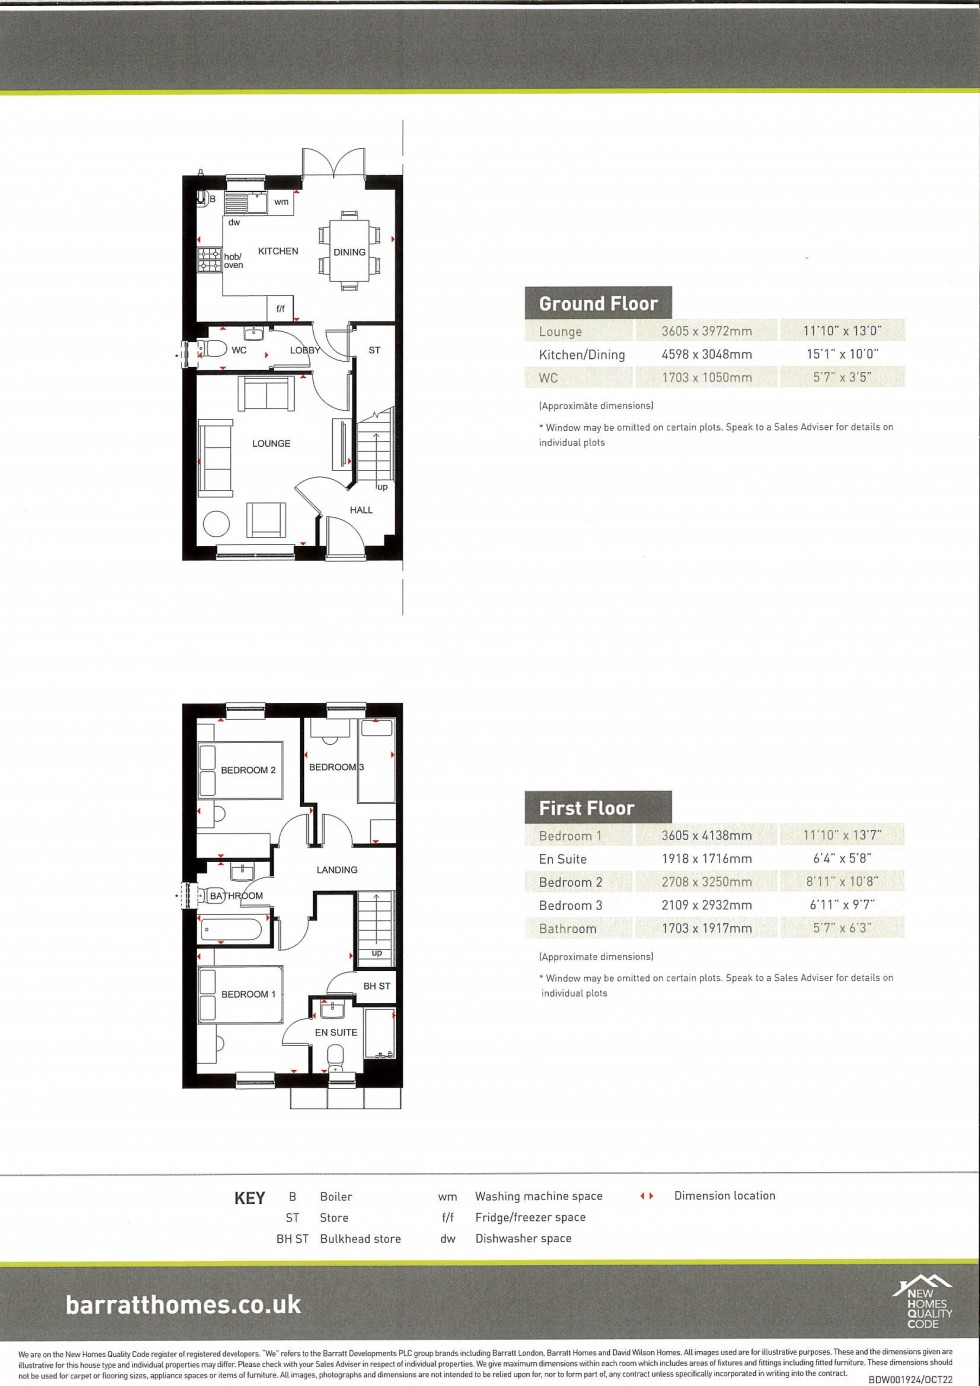 Floorplan for Ellerton, Plot 57 